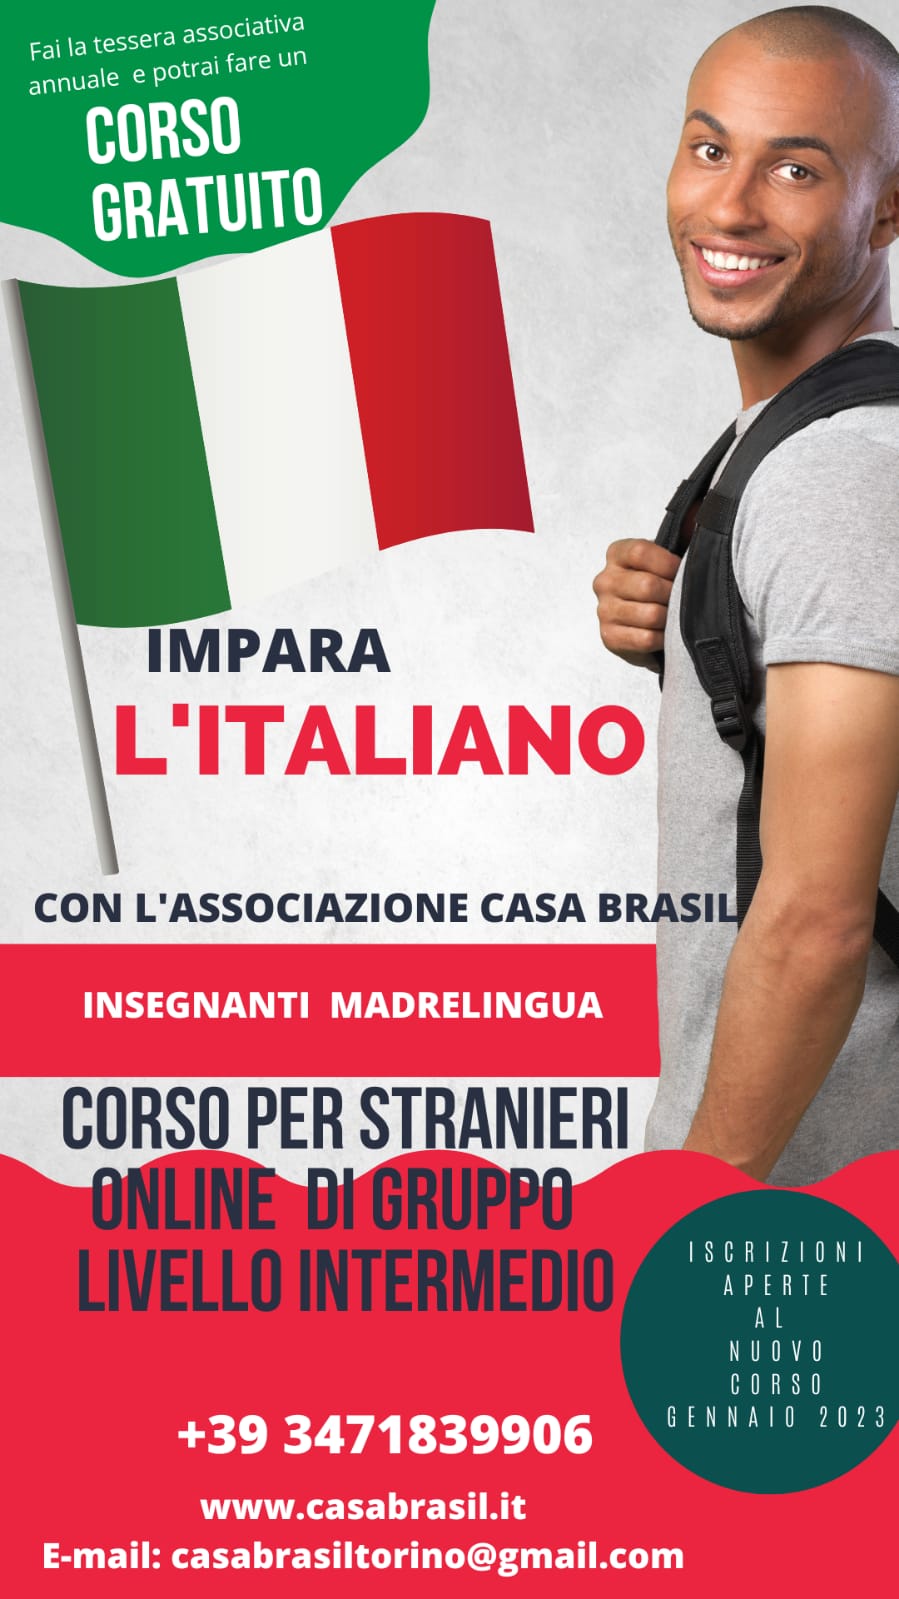 Corso di lingua italiana per stranieri